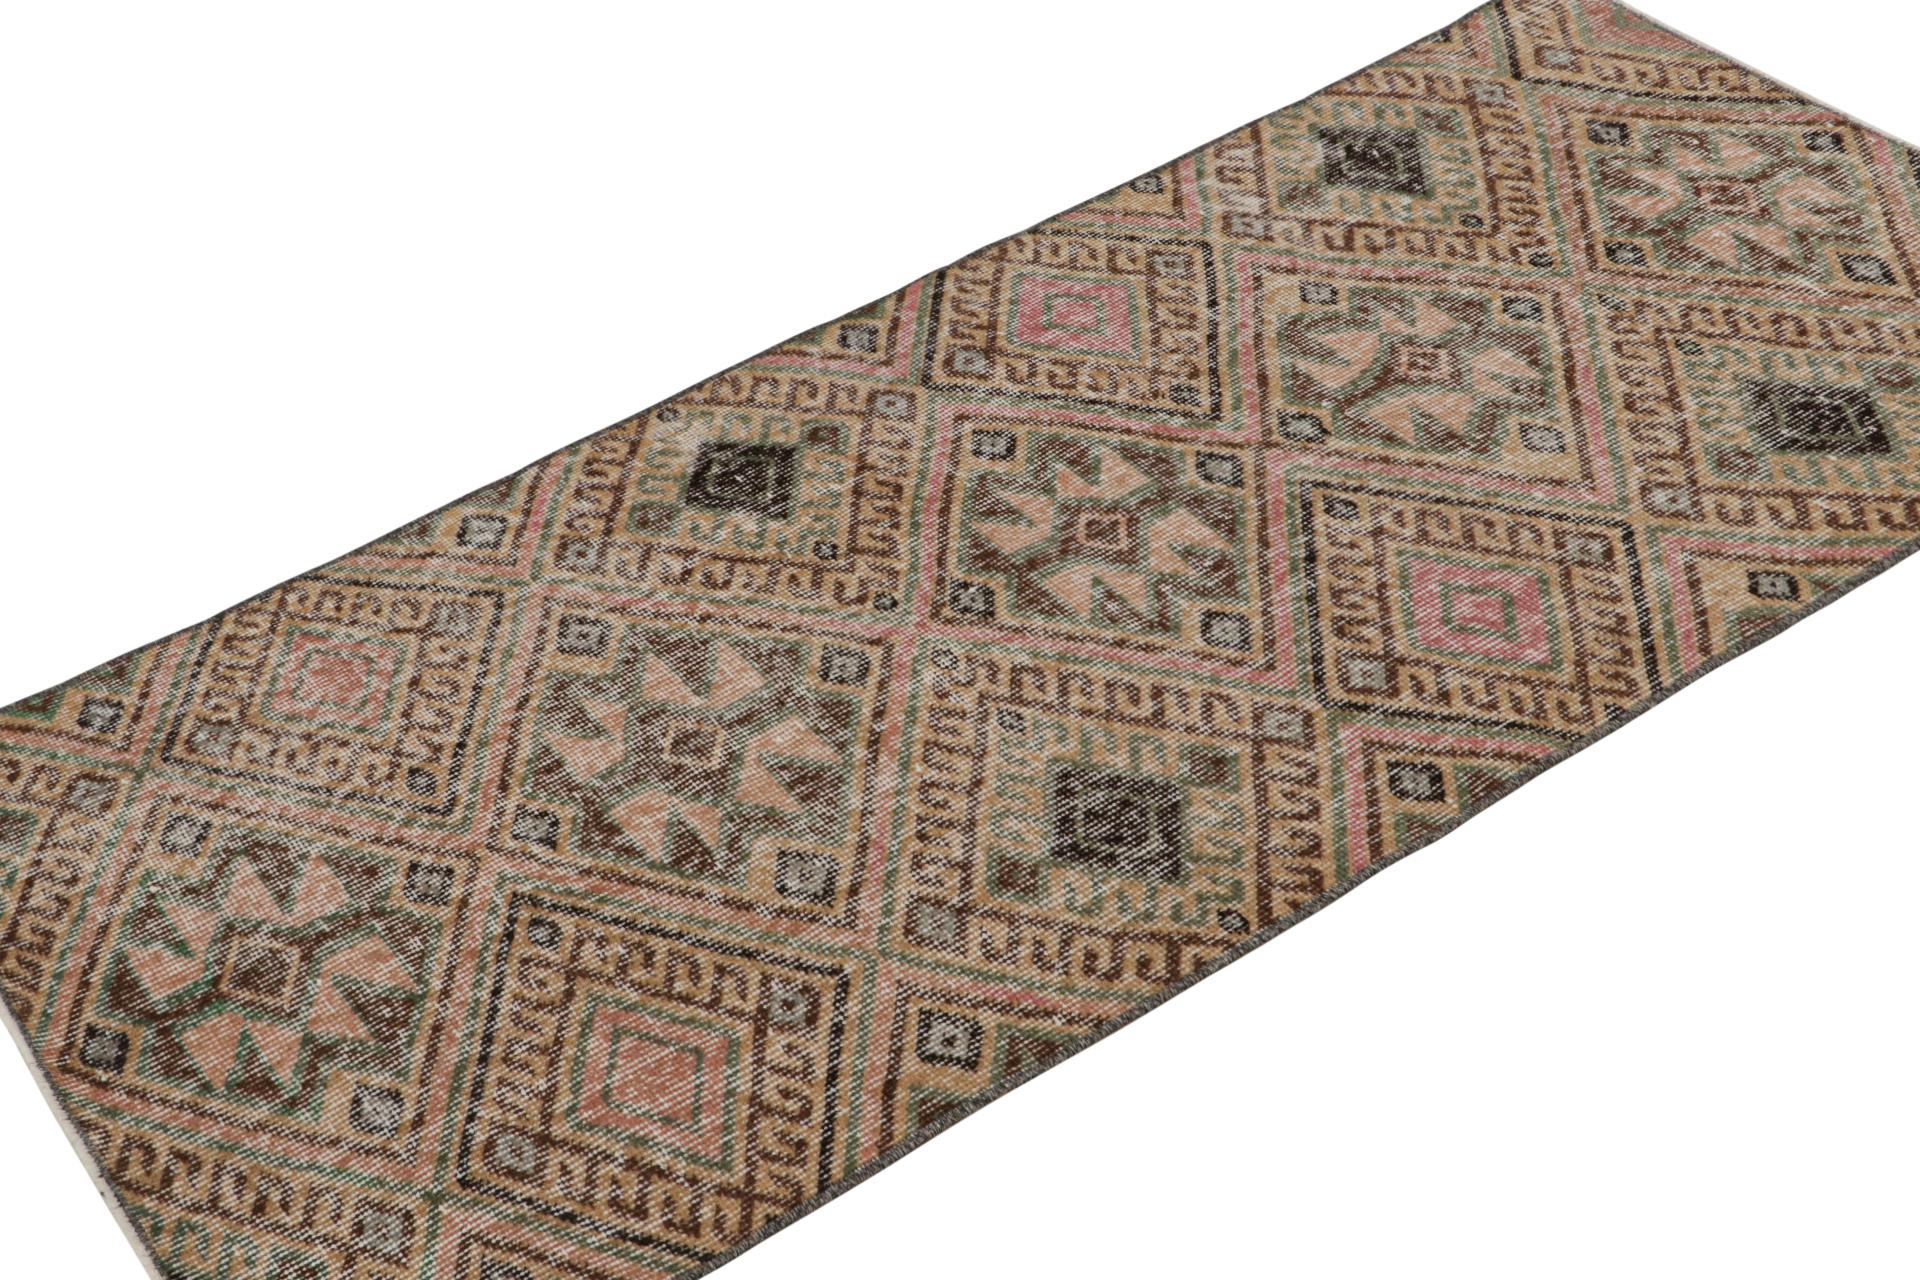 Dieser handgeknüpfte 3x6 Teppich aus Wolle stammt aus der Türkei (ca. 1960-1970) und zeigt das türkische Tribal-Design von Zeki Müren aus der Mitte des Jahrhunderts. 

Über das Design: 

Bewunderer des Kunsthandwerks werden feststellen, dass die